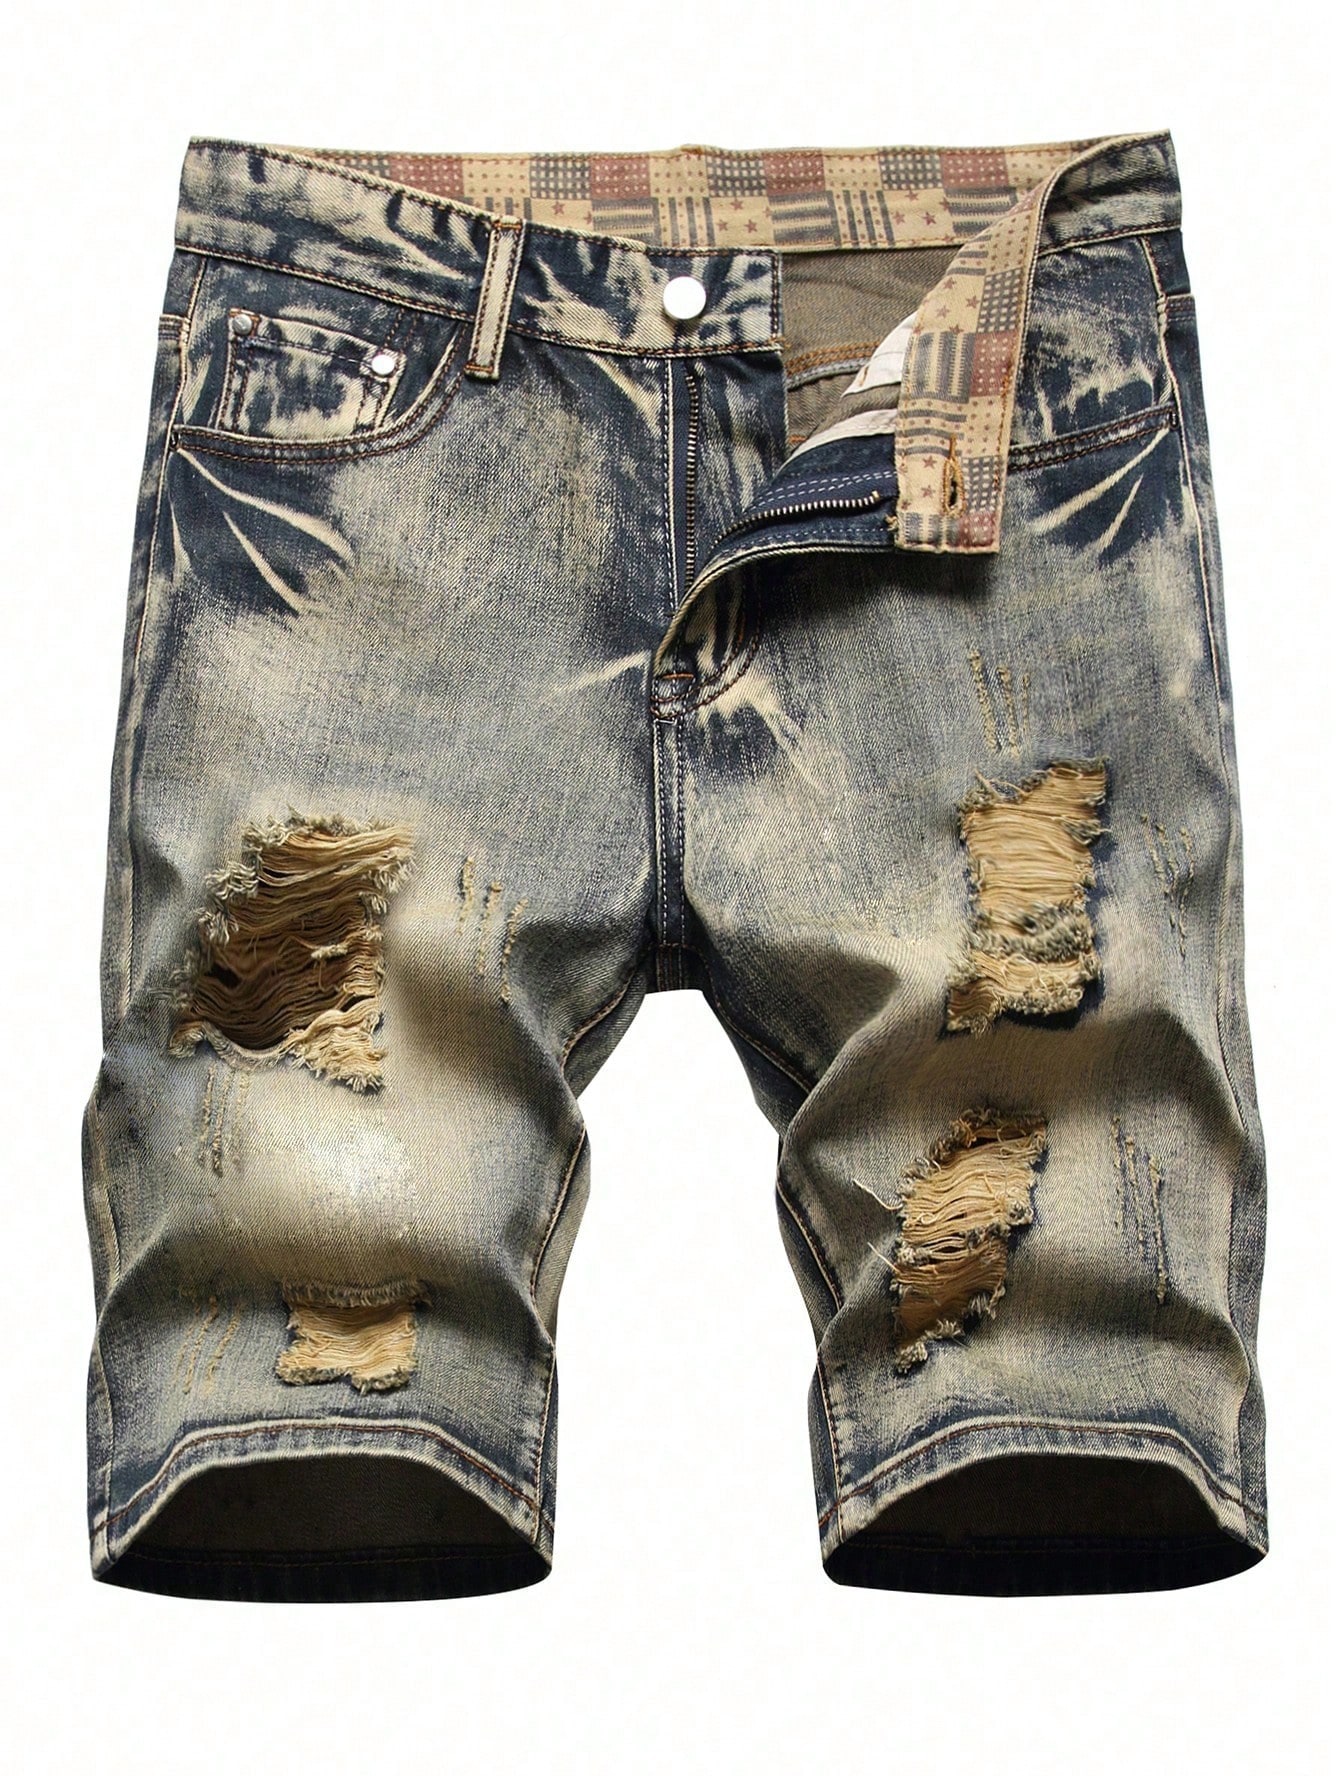 Мужские джинсовые шорты с потертостями, средняя стирка